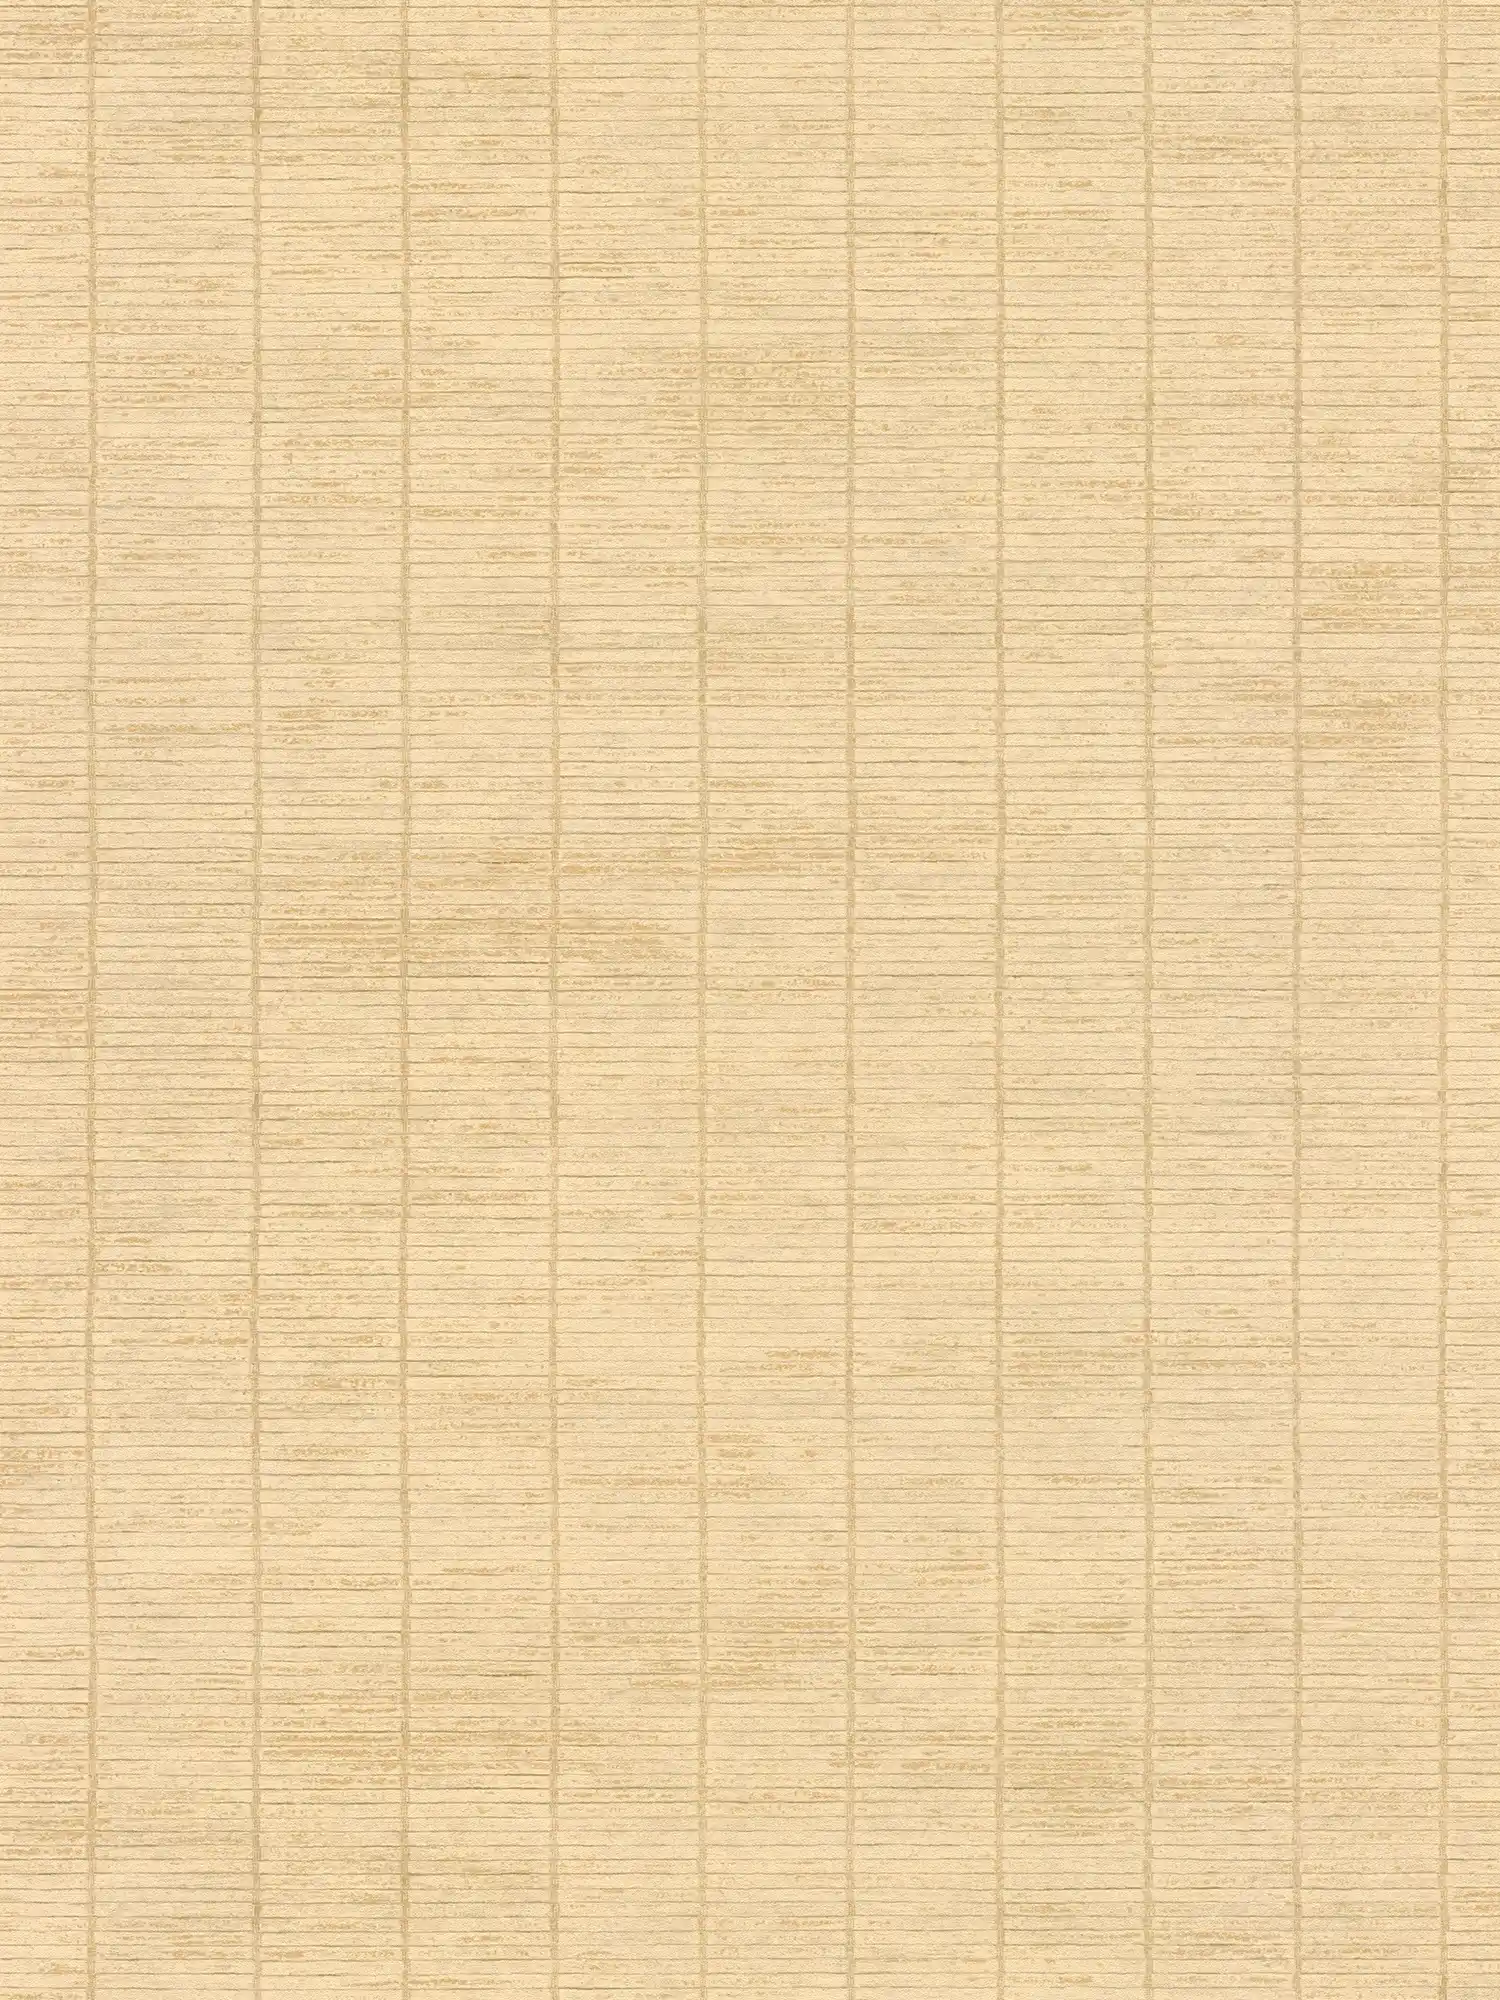 papier peint en papier intissé imitant une natte de paille asiatique - beige
